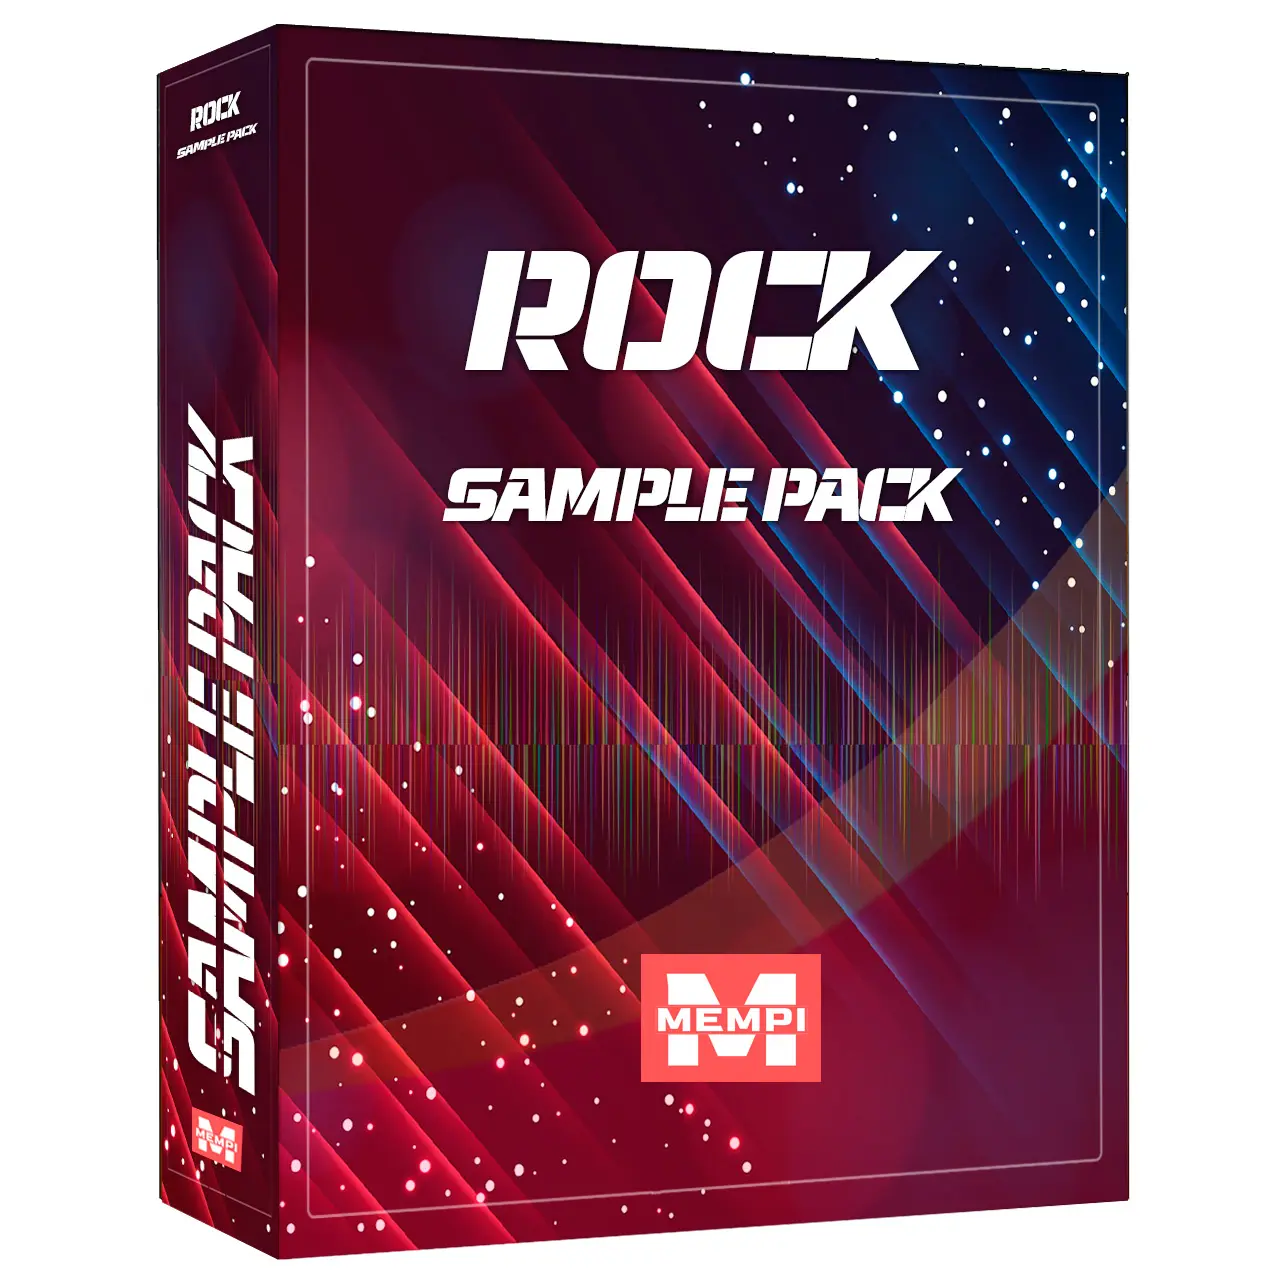 Rock sample packs